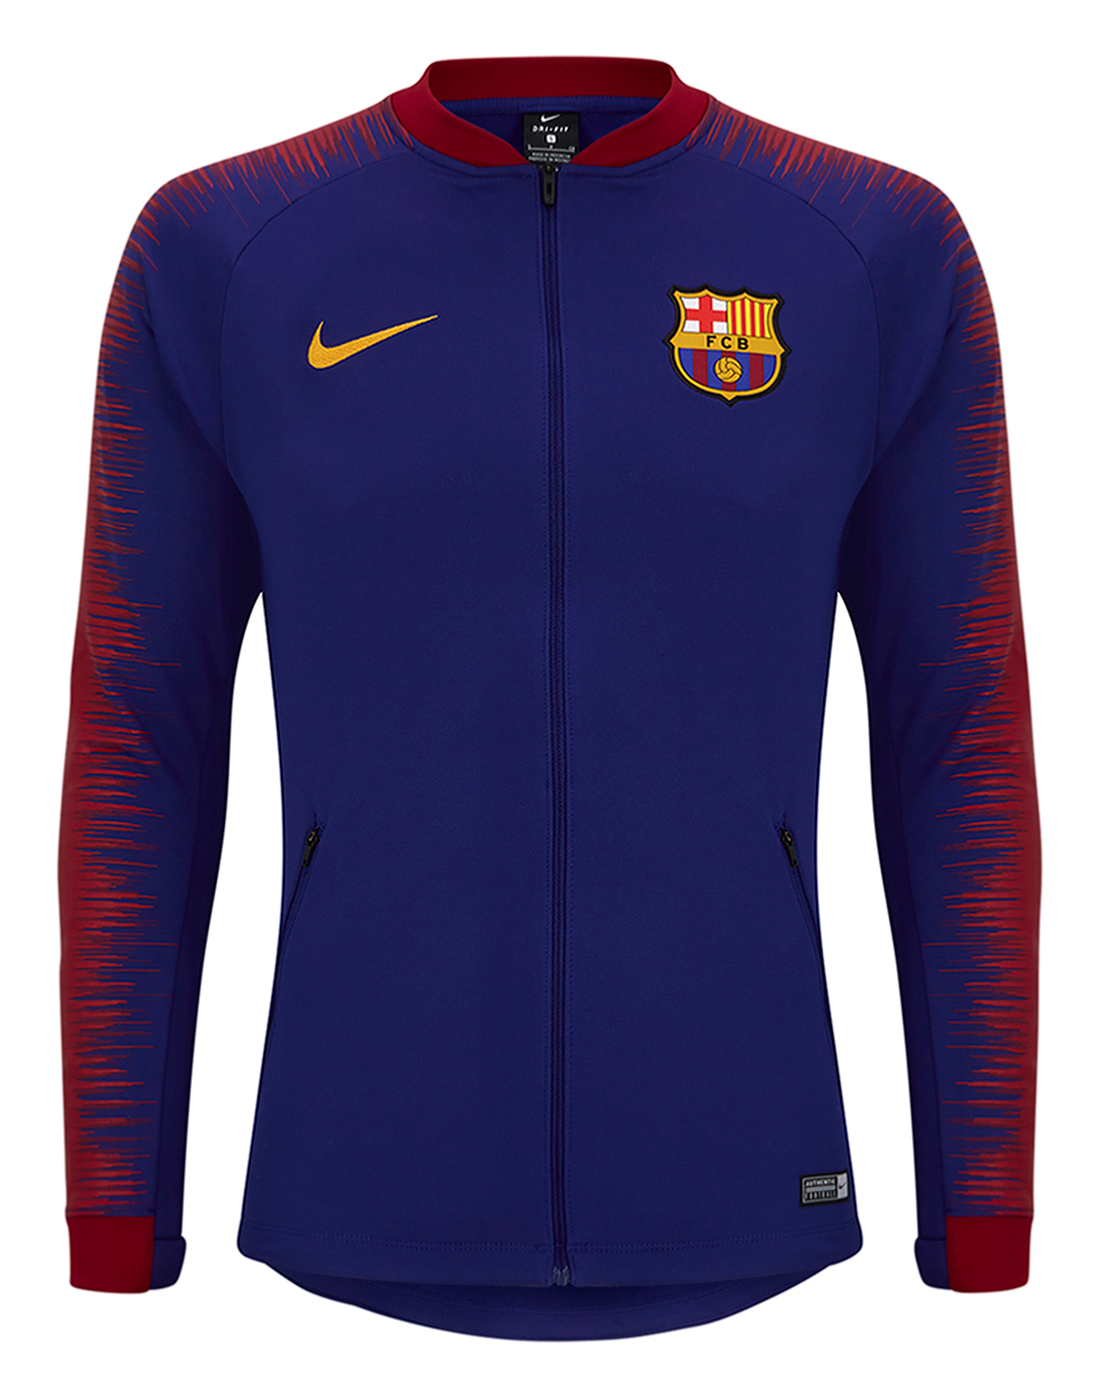 Nike Adult Barcelona Anthem Jacket | Life Style Sports